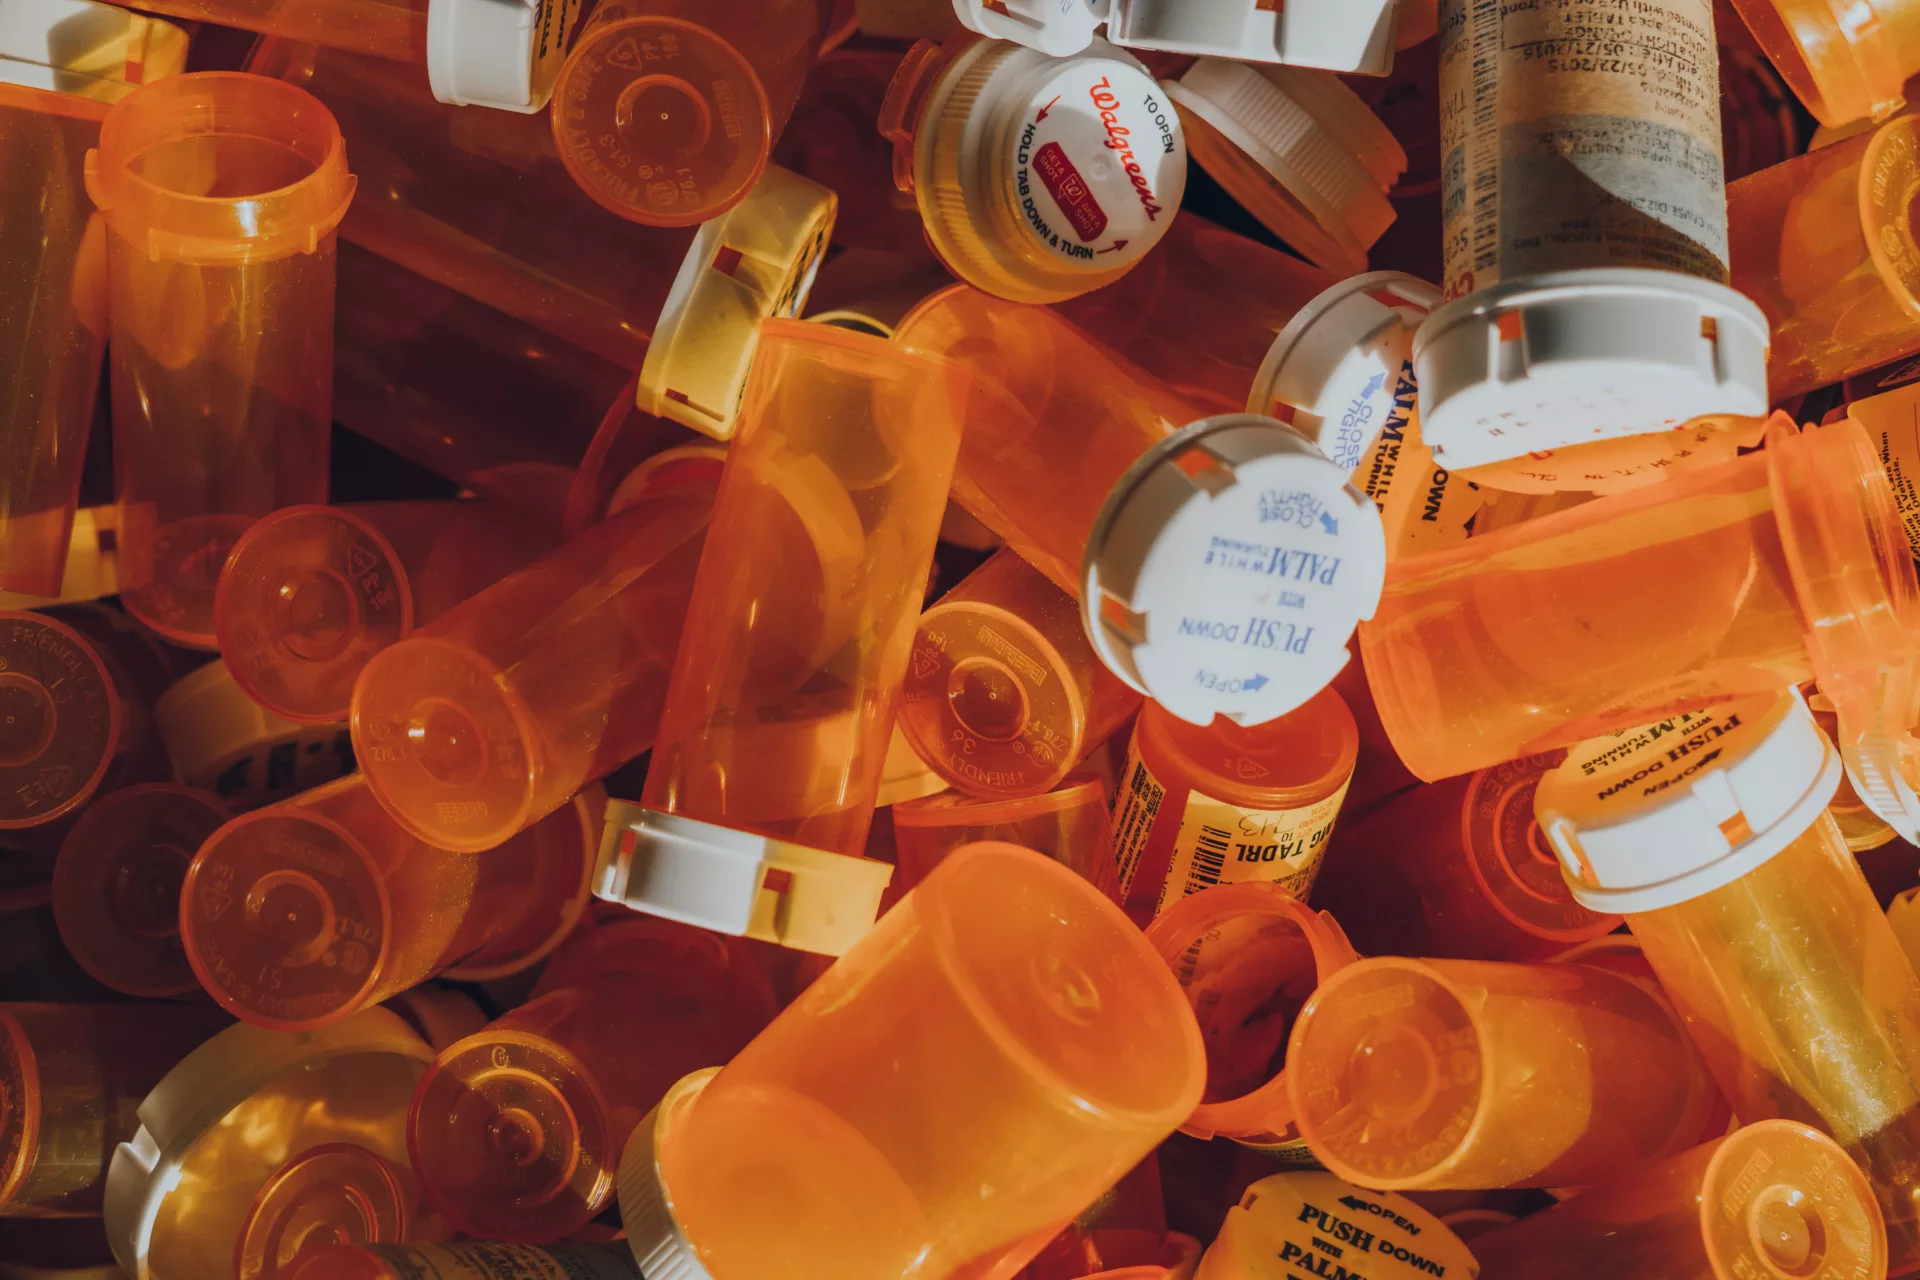 Empty prescription bottles in a pile